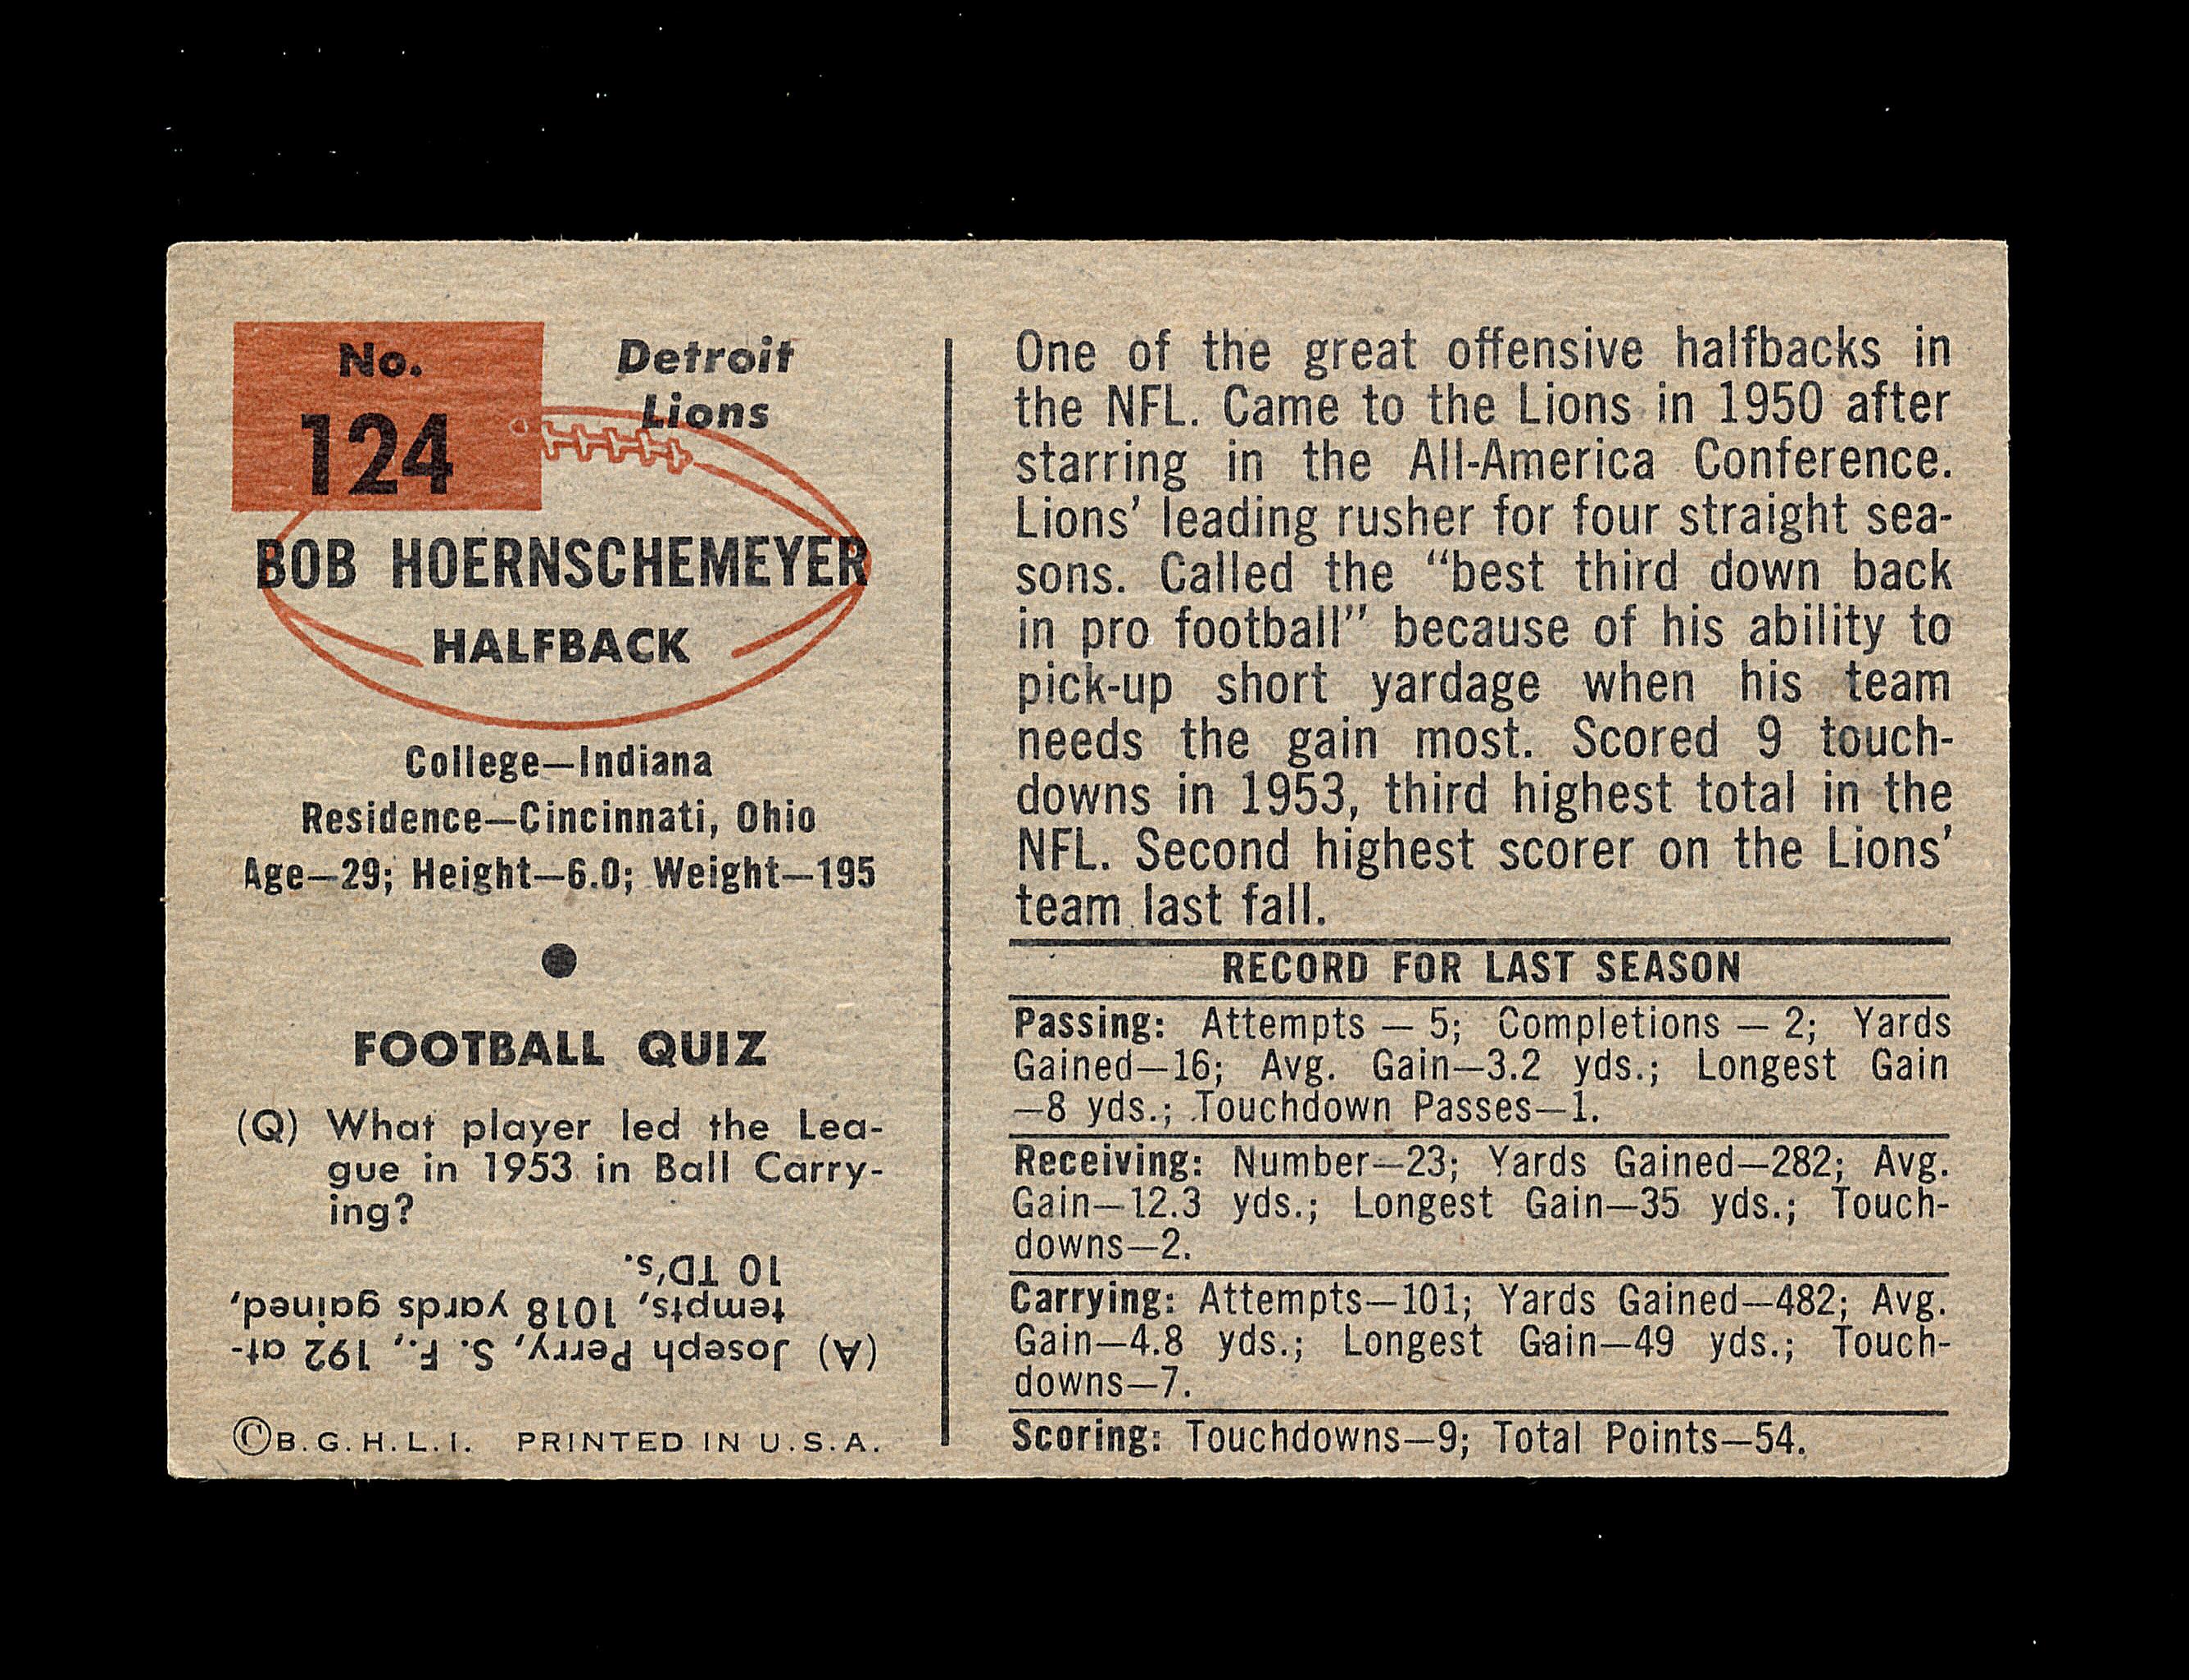 1954 Bowman Football Card #124 Bob Heornschemeyer Detroit Lions.